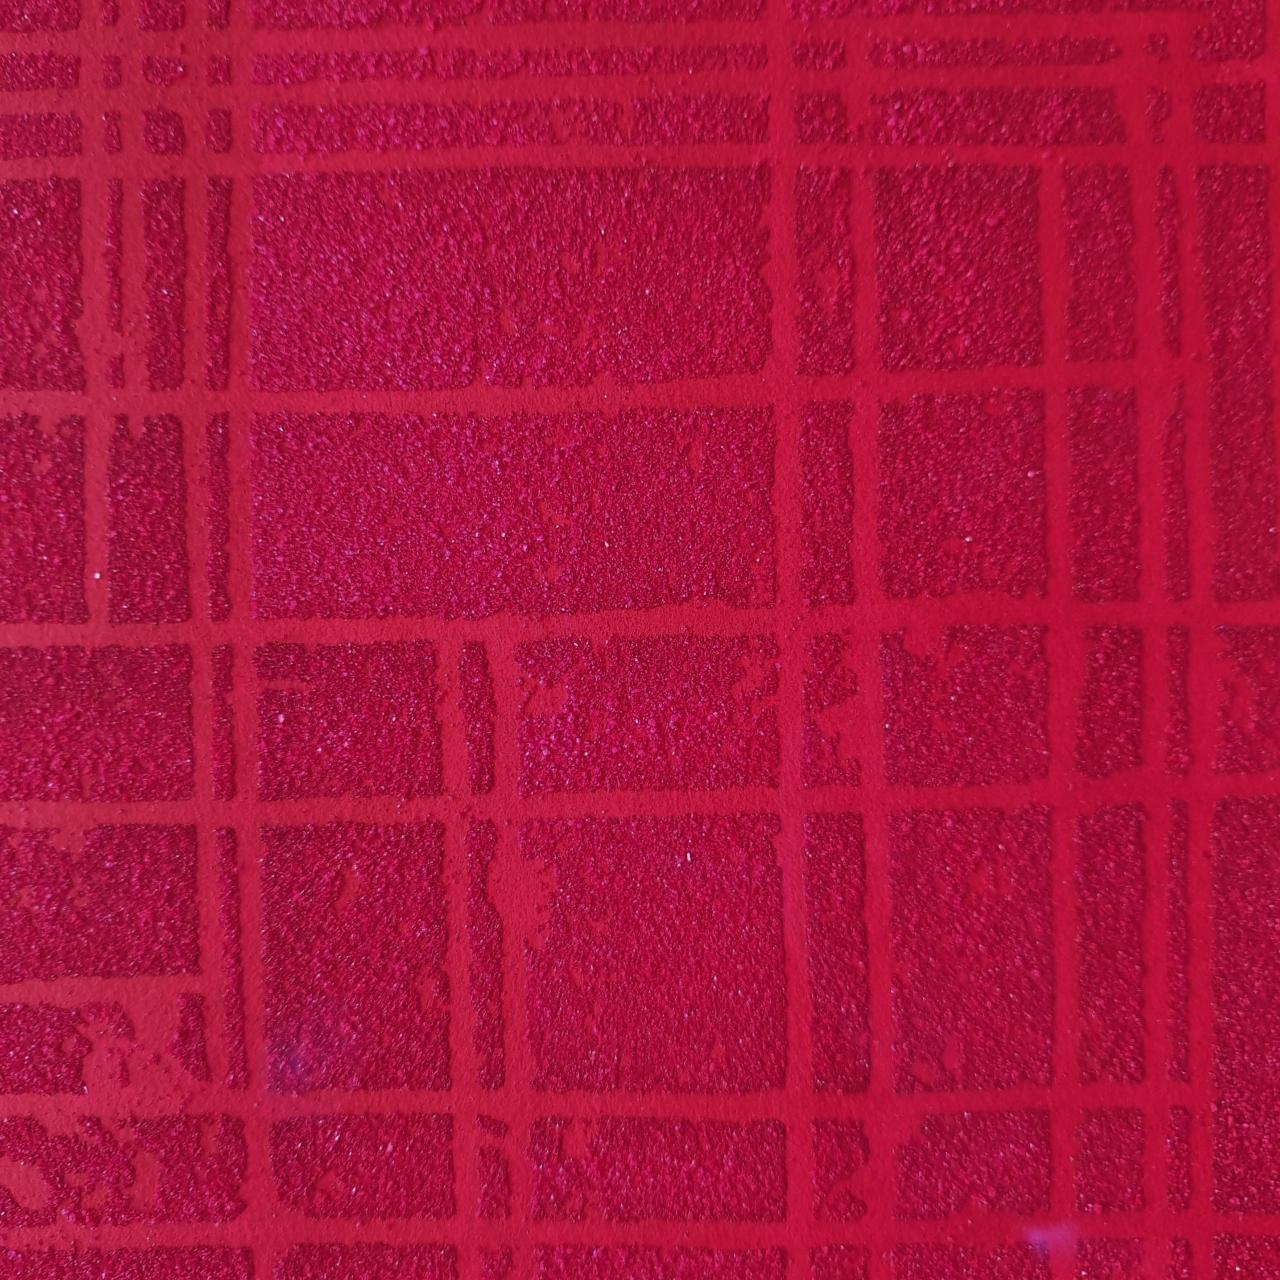 o.T. rot ist ein einzigartiger, mittelgroßer, moderner Steinschnitt-Monotypie-Druck des deutschen Künstlers Dieter Kränzlein. Der Druck wird direkt von einem bearbeiteten Marmorrelief abgezogen. Mit Hilfe von Bindemitteln und Pigmenten, die mit